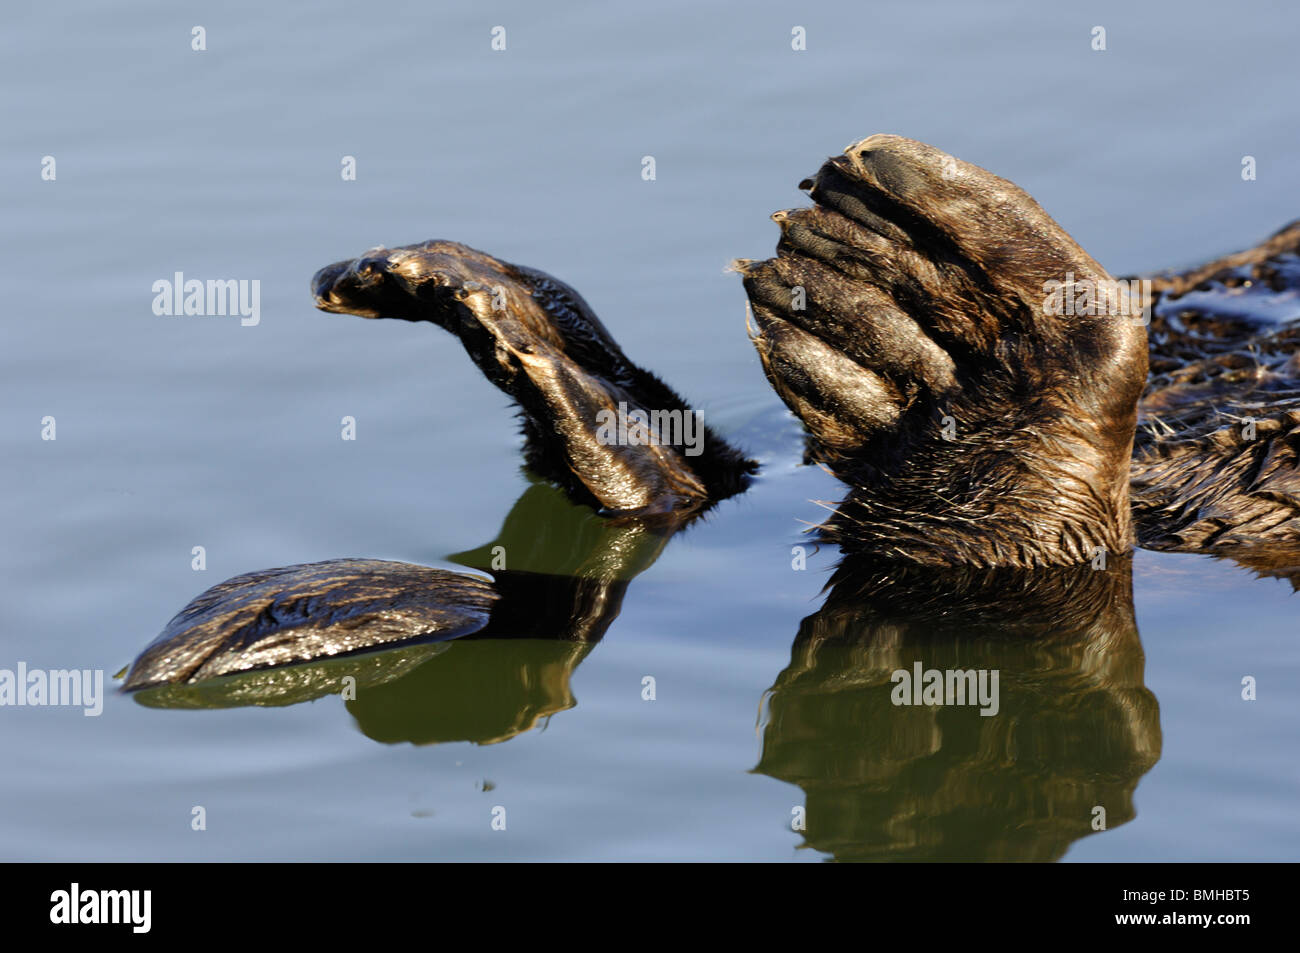 Stock Photo closeup imagen de una nutria marina de aletas. Foto de stock